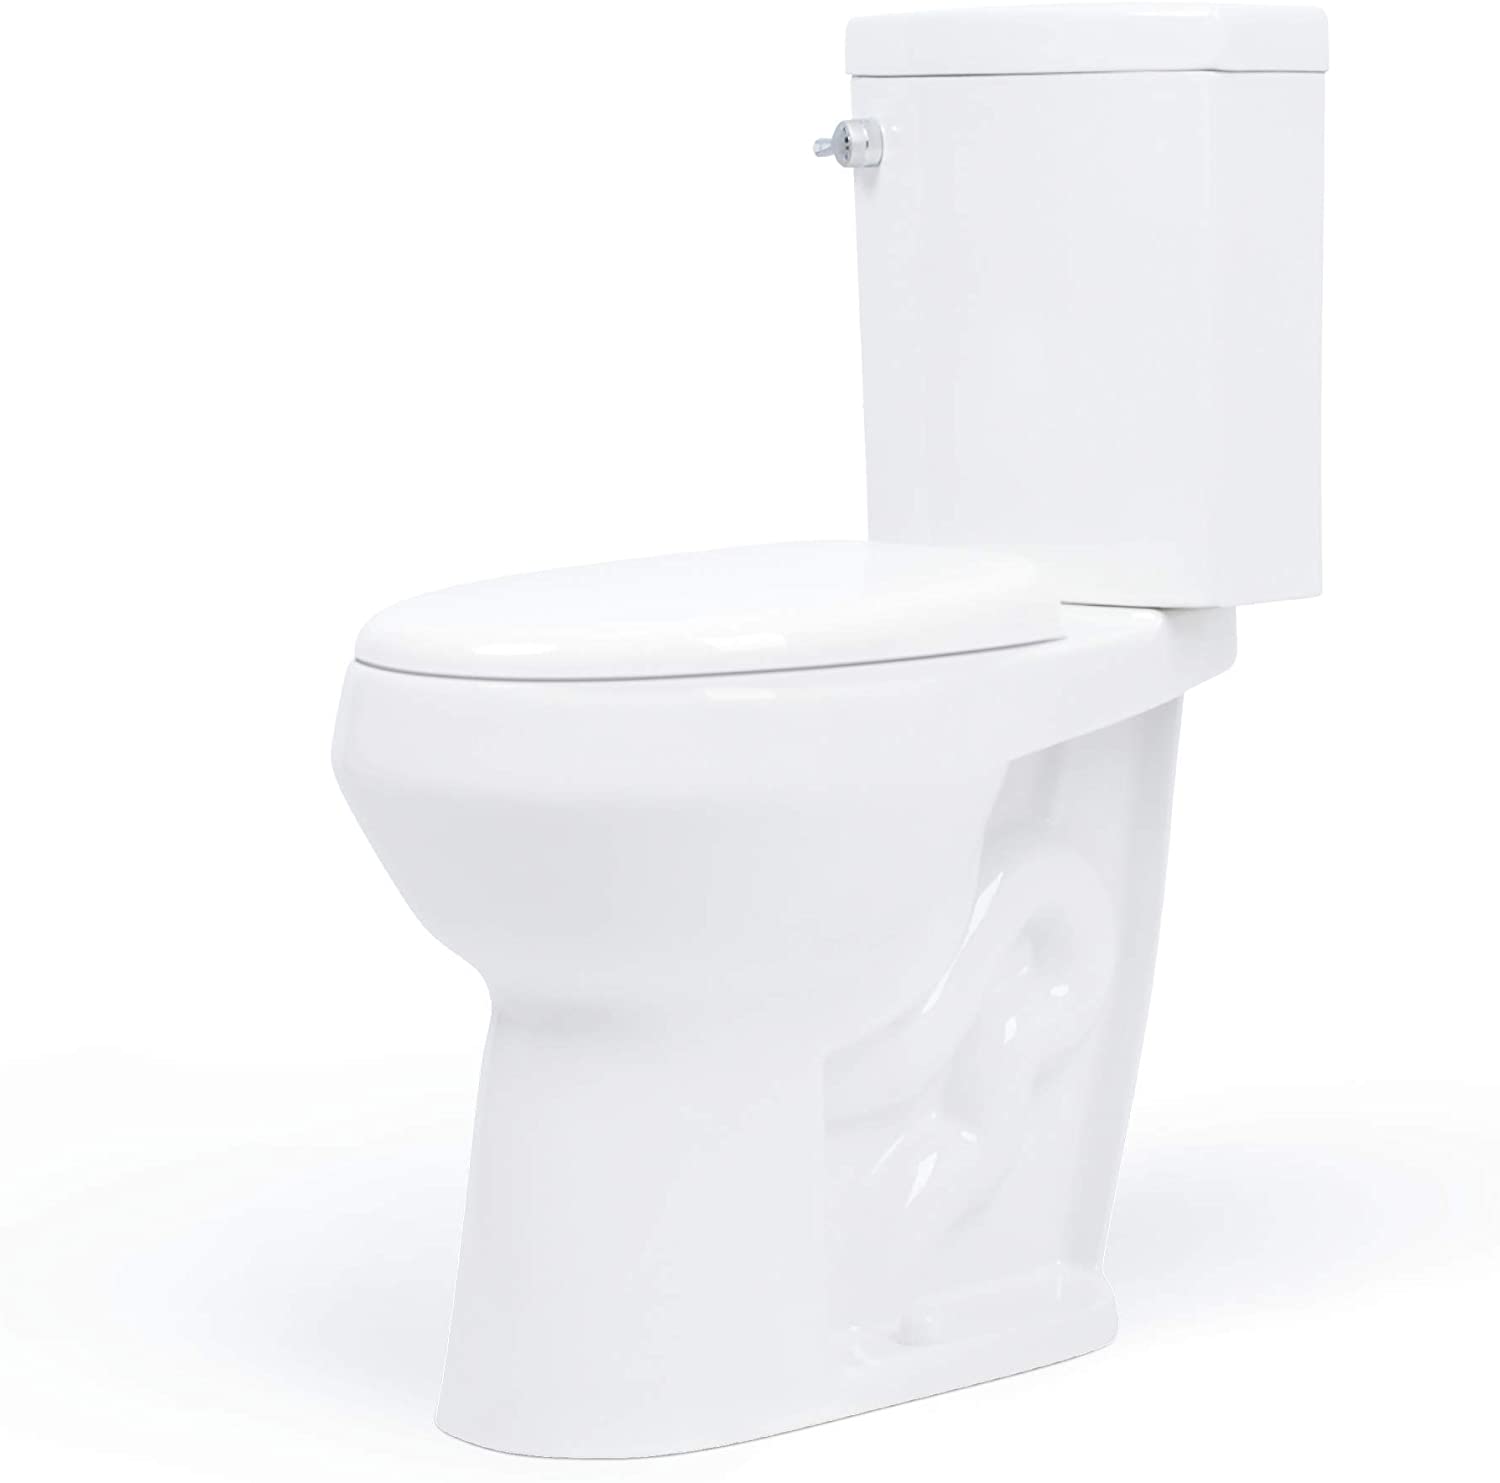 elongated toilet for seniors